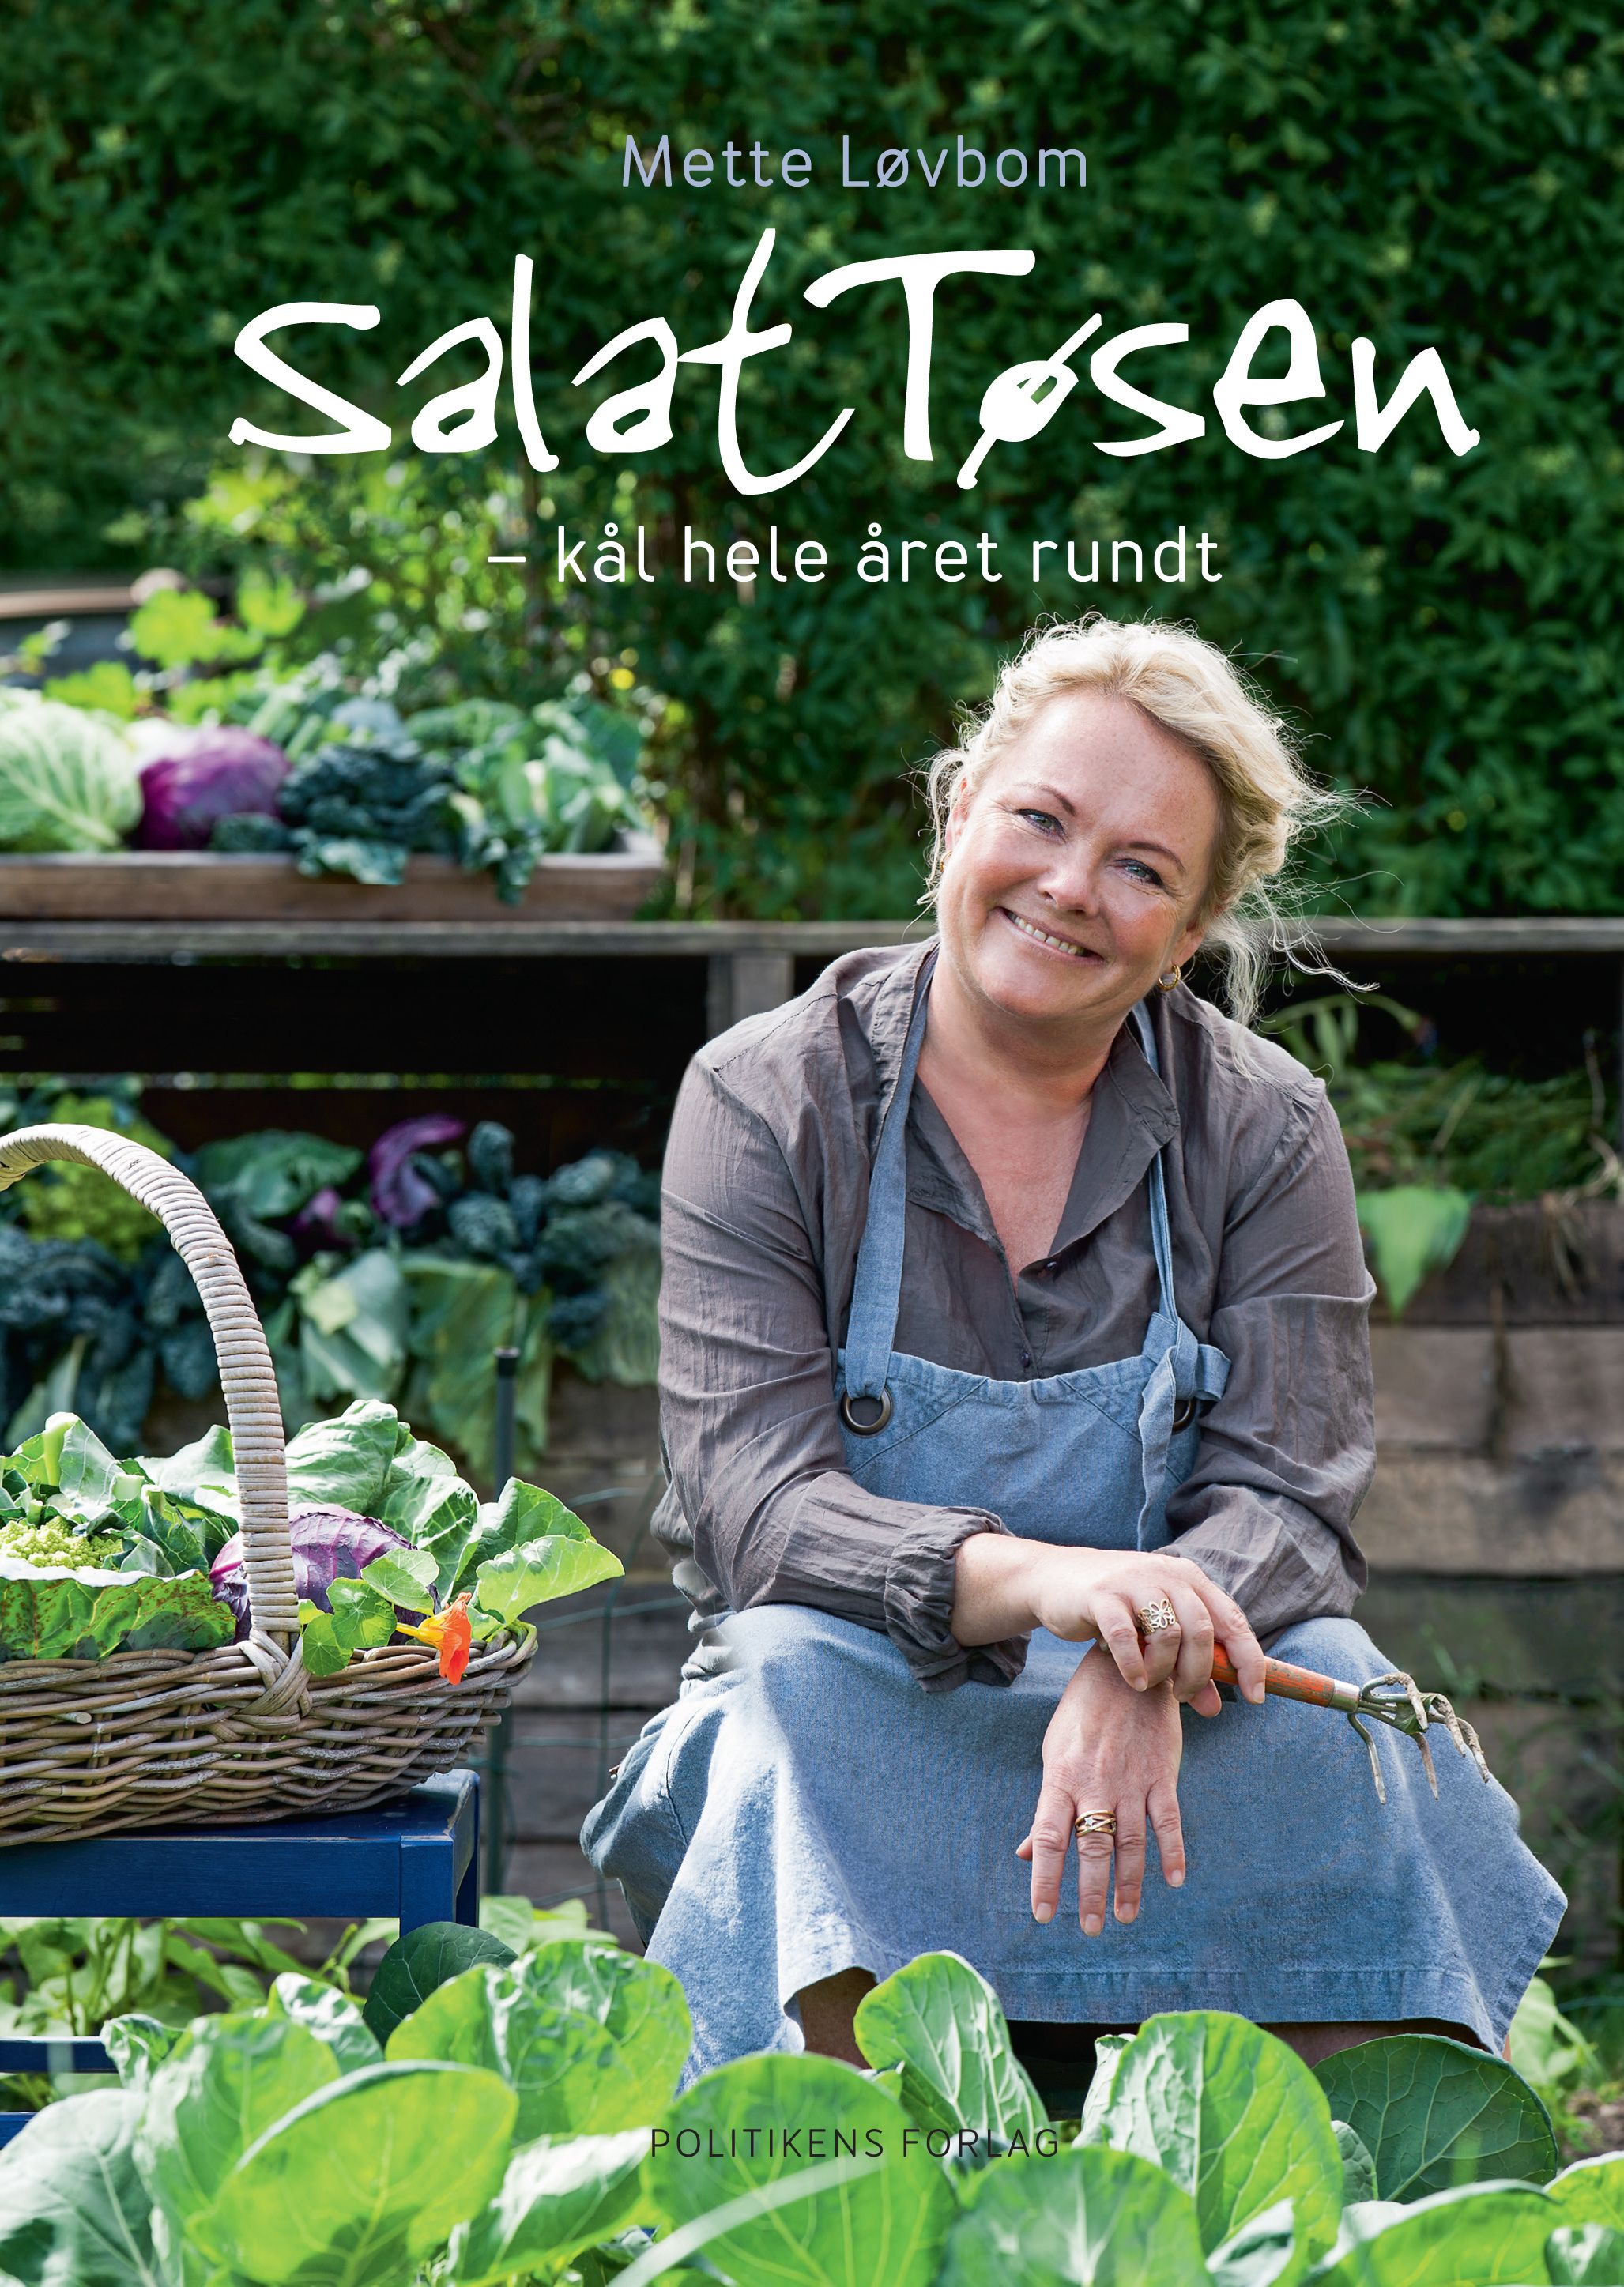 Salattøsen - Kål hele året rundt, e-bog af Mette Løvbom